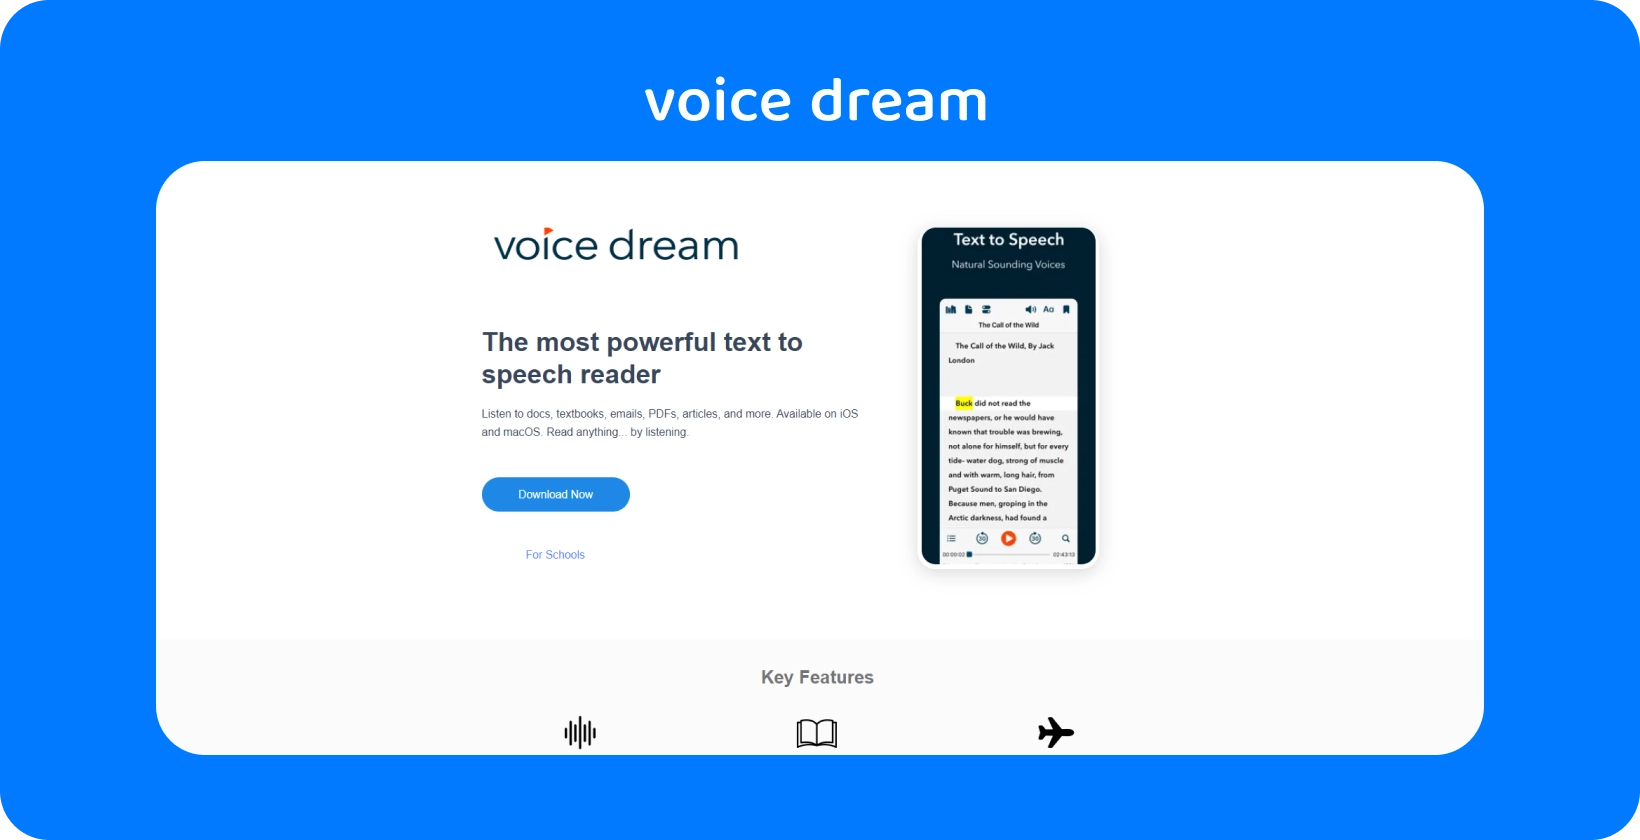 อินเทอร์เฟซแอป Voice Dream แสดงโปรแกรมอ่านข้อความเป็นคําพูดที่ทรงพลังสําหรับเอกสารต่างๆ บนอุปกรณ์มือถือ